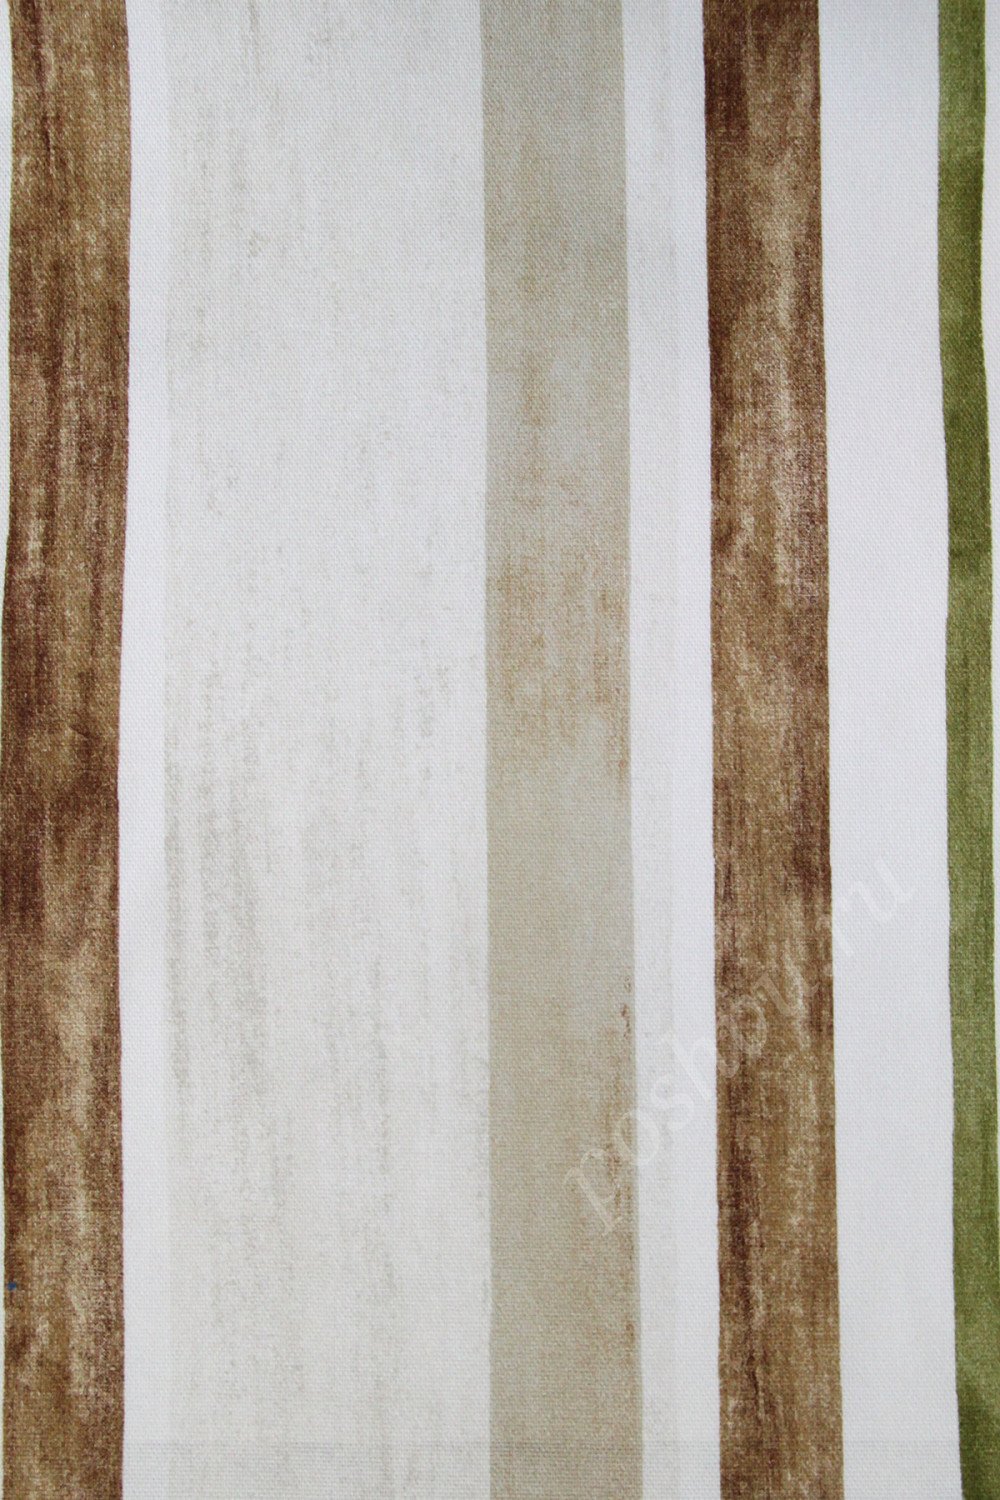 Портьерная ткань рогожка REGENCY коричневые, серые, зеленые полосы разной ширины